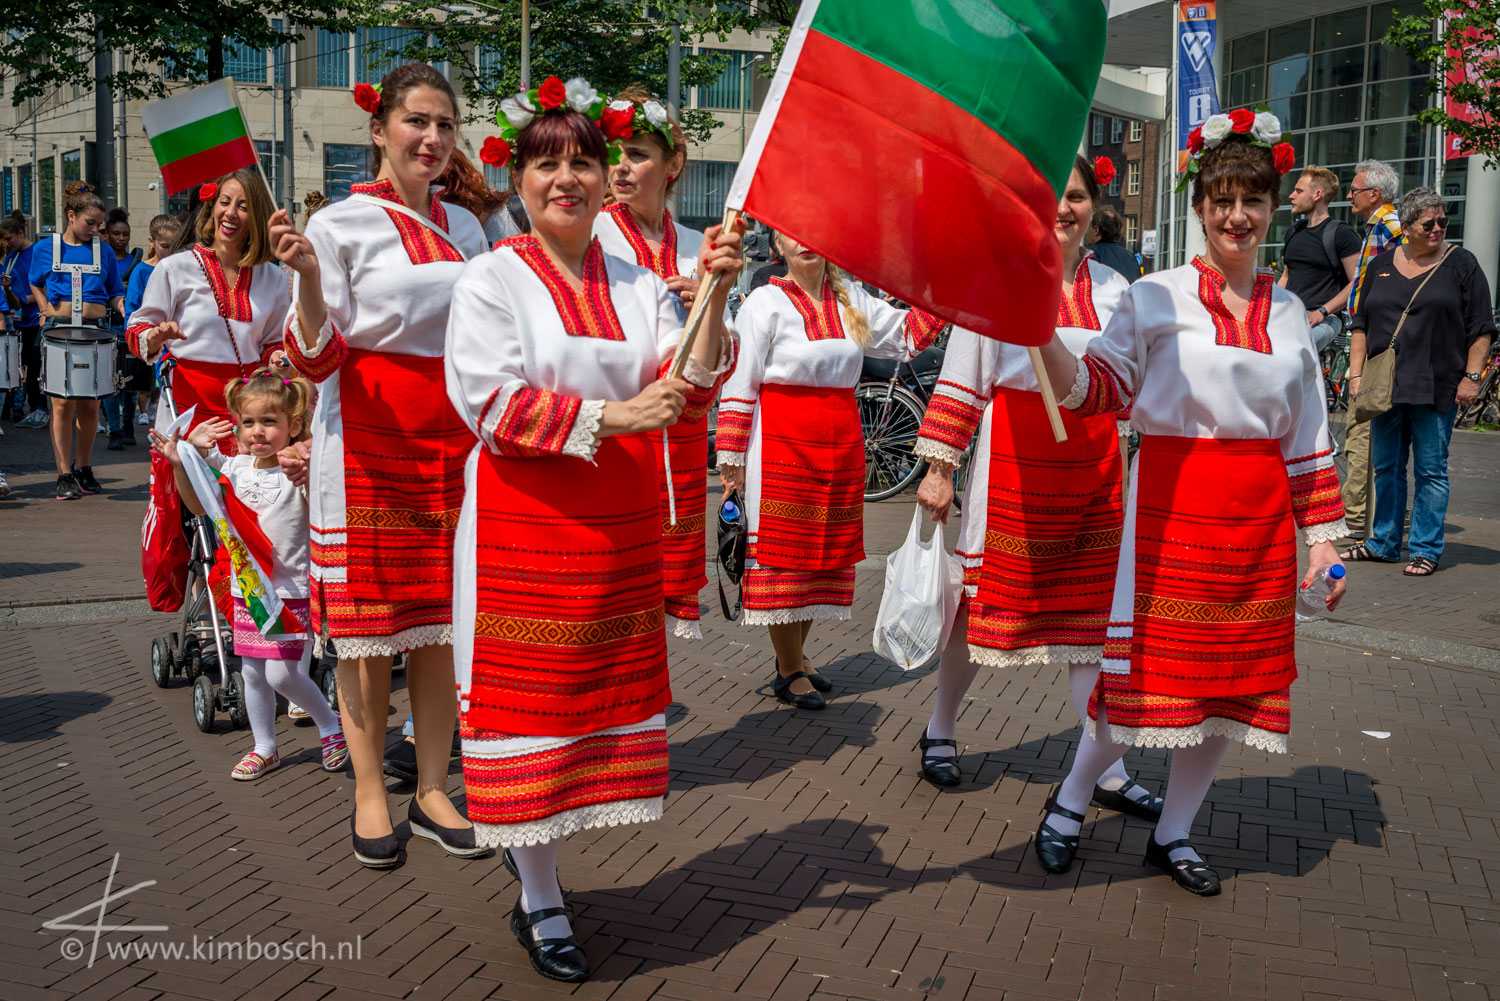 The Hague Cultural Parade